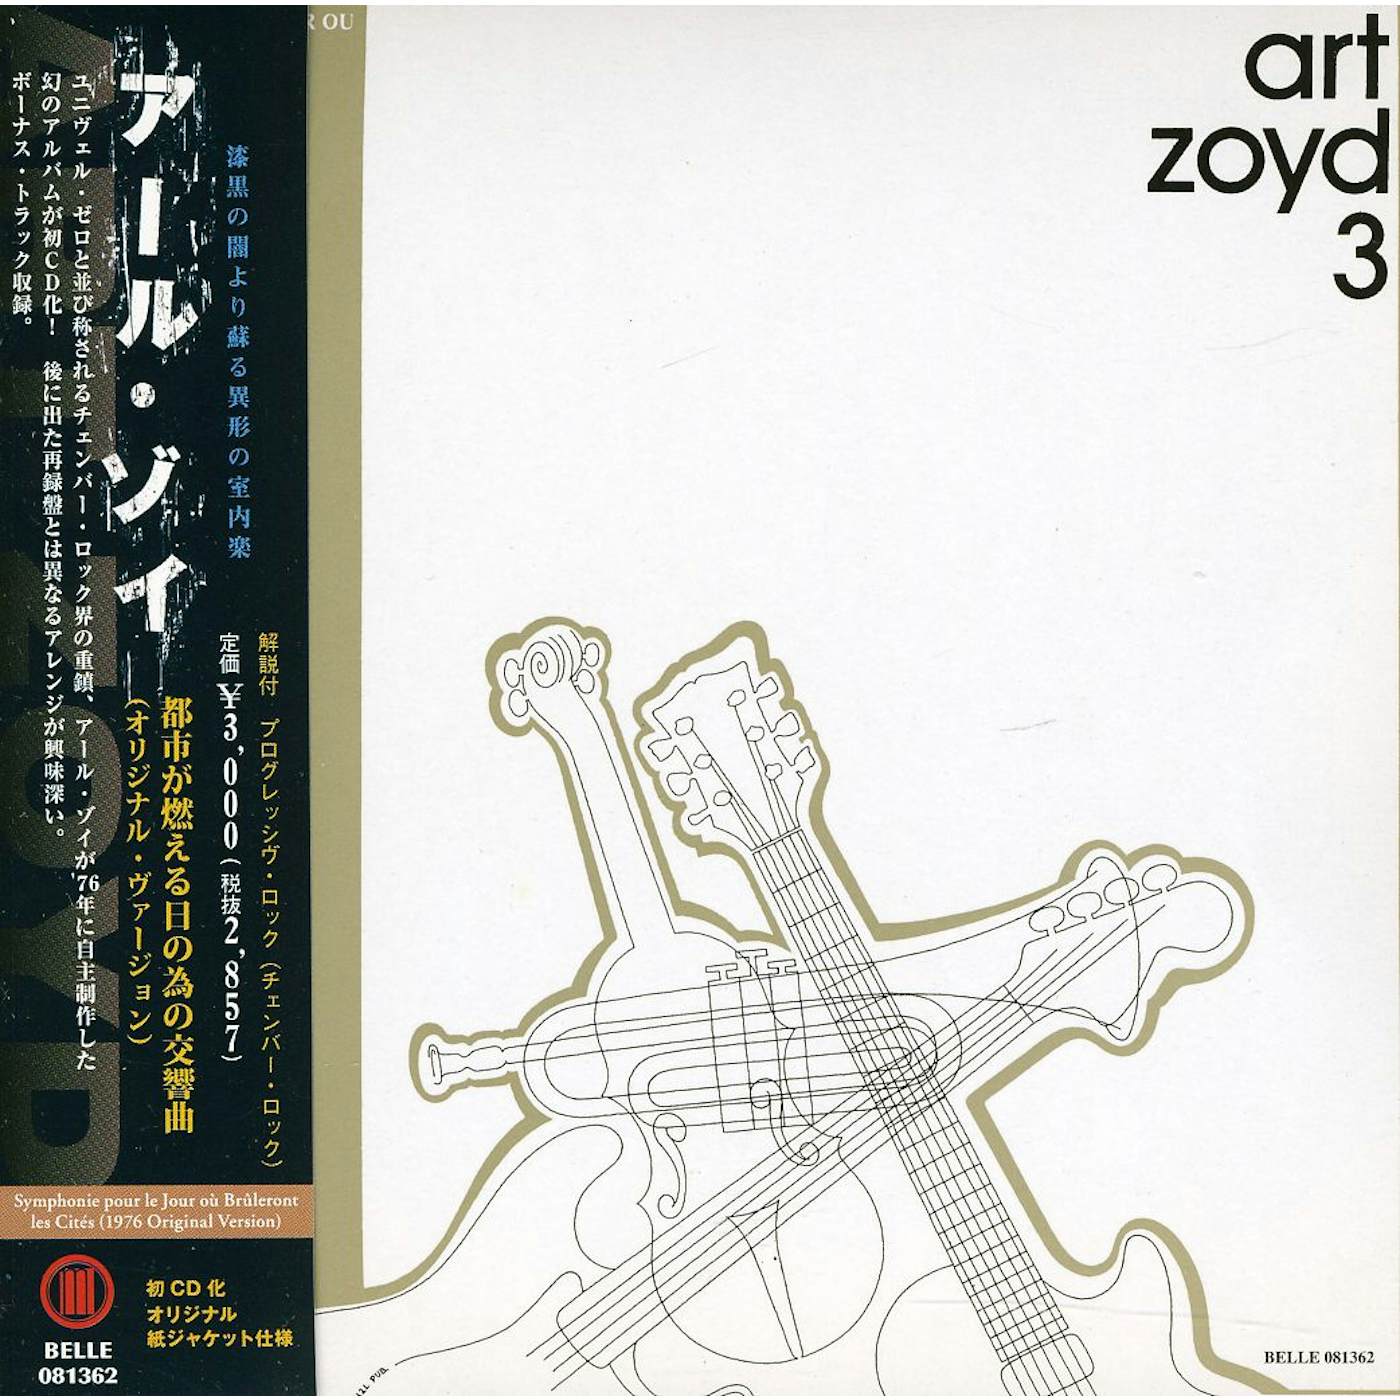 ART ZOYD 3 CD